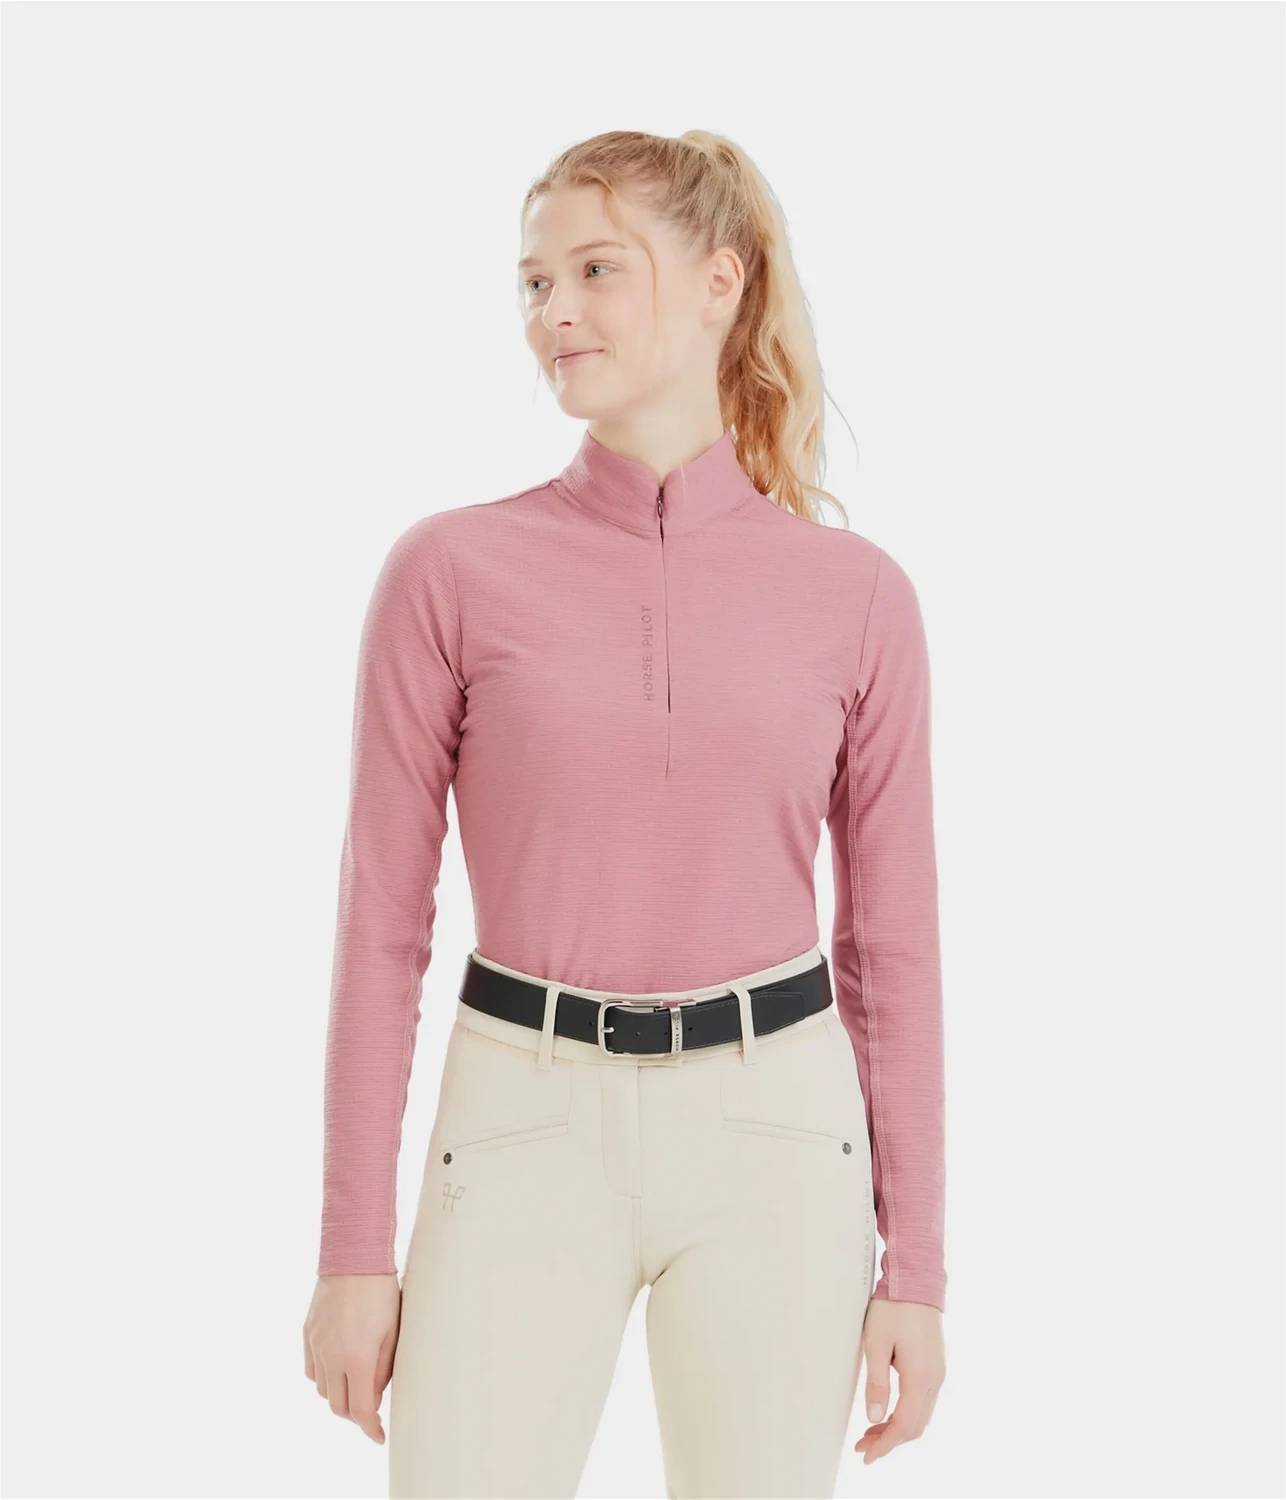 T-shirt ML Suntech Horse Pilot mesa pink